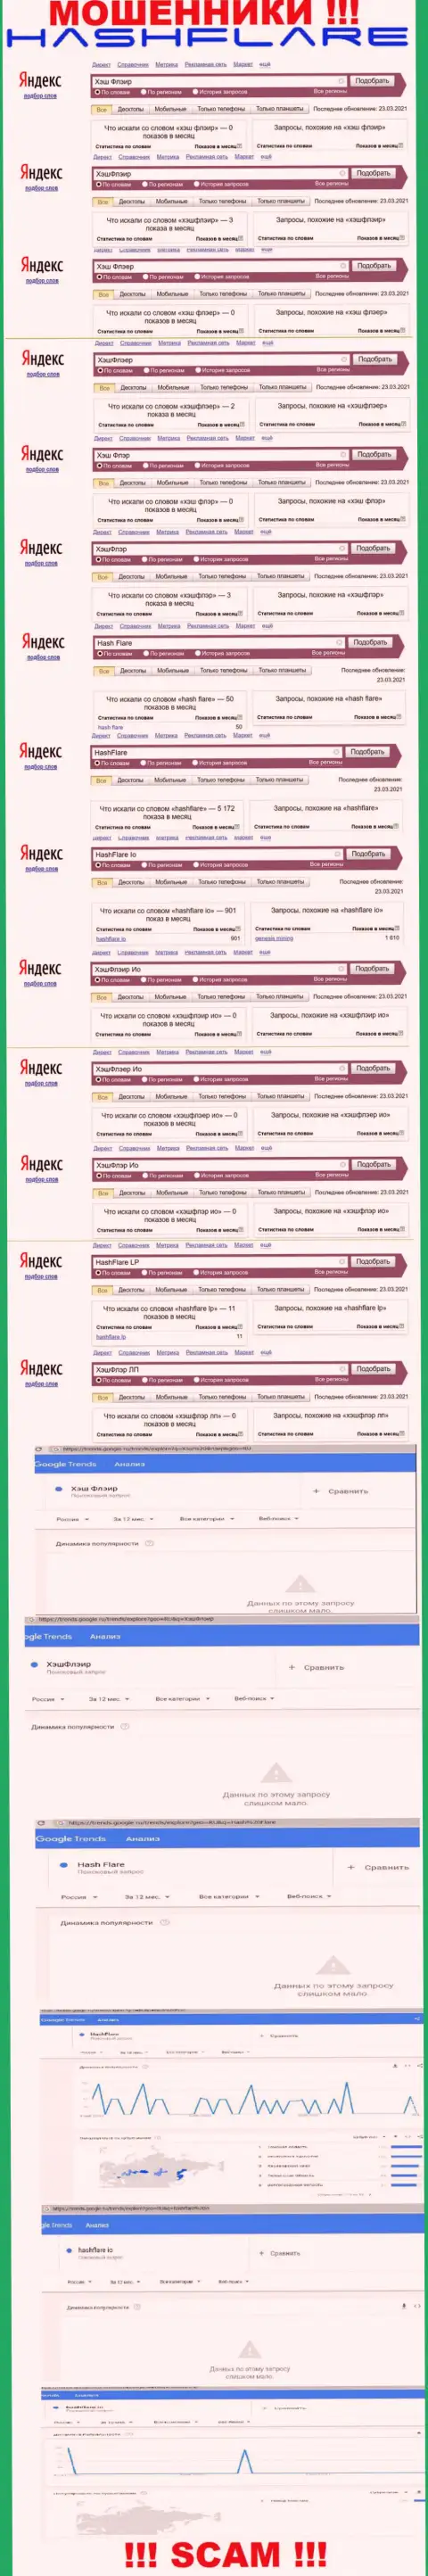 Число поисковых запросов в поисковиках всемирной internet сети по бренду мошенников ХэшФлэр